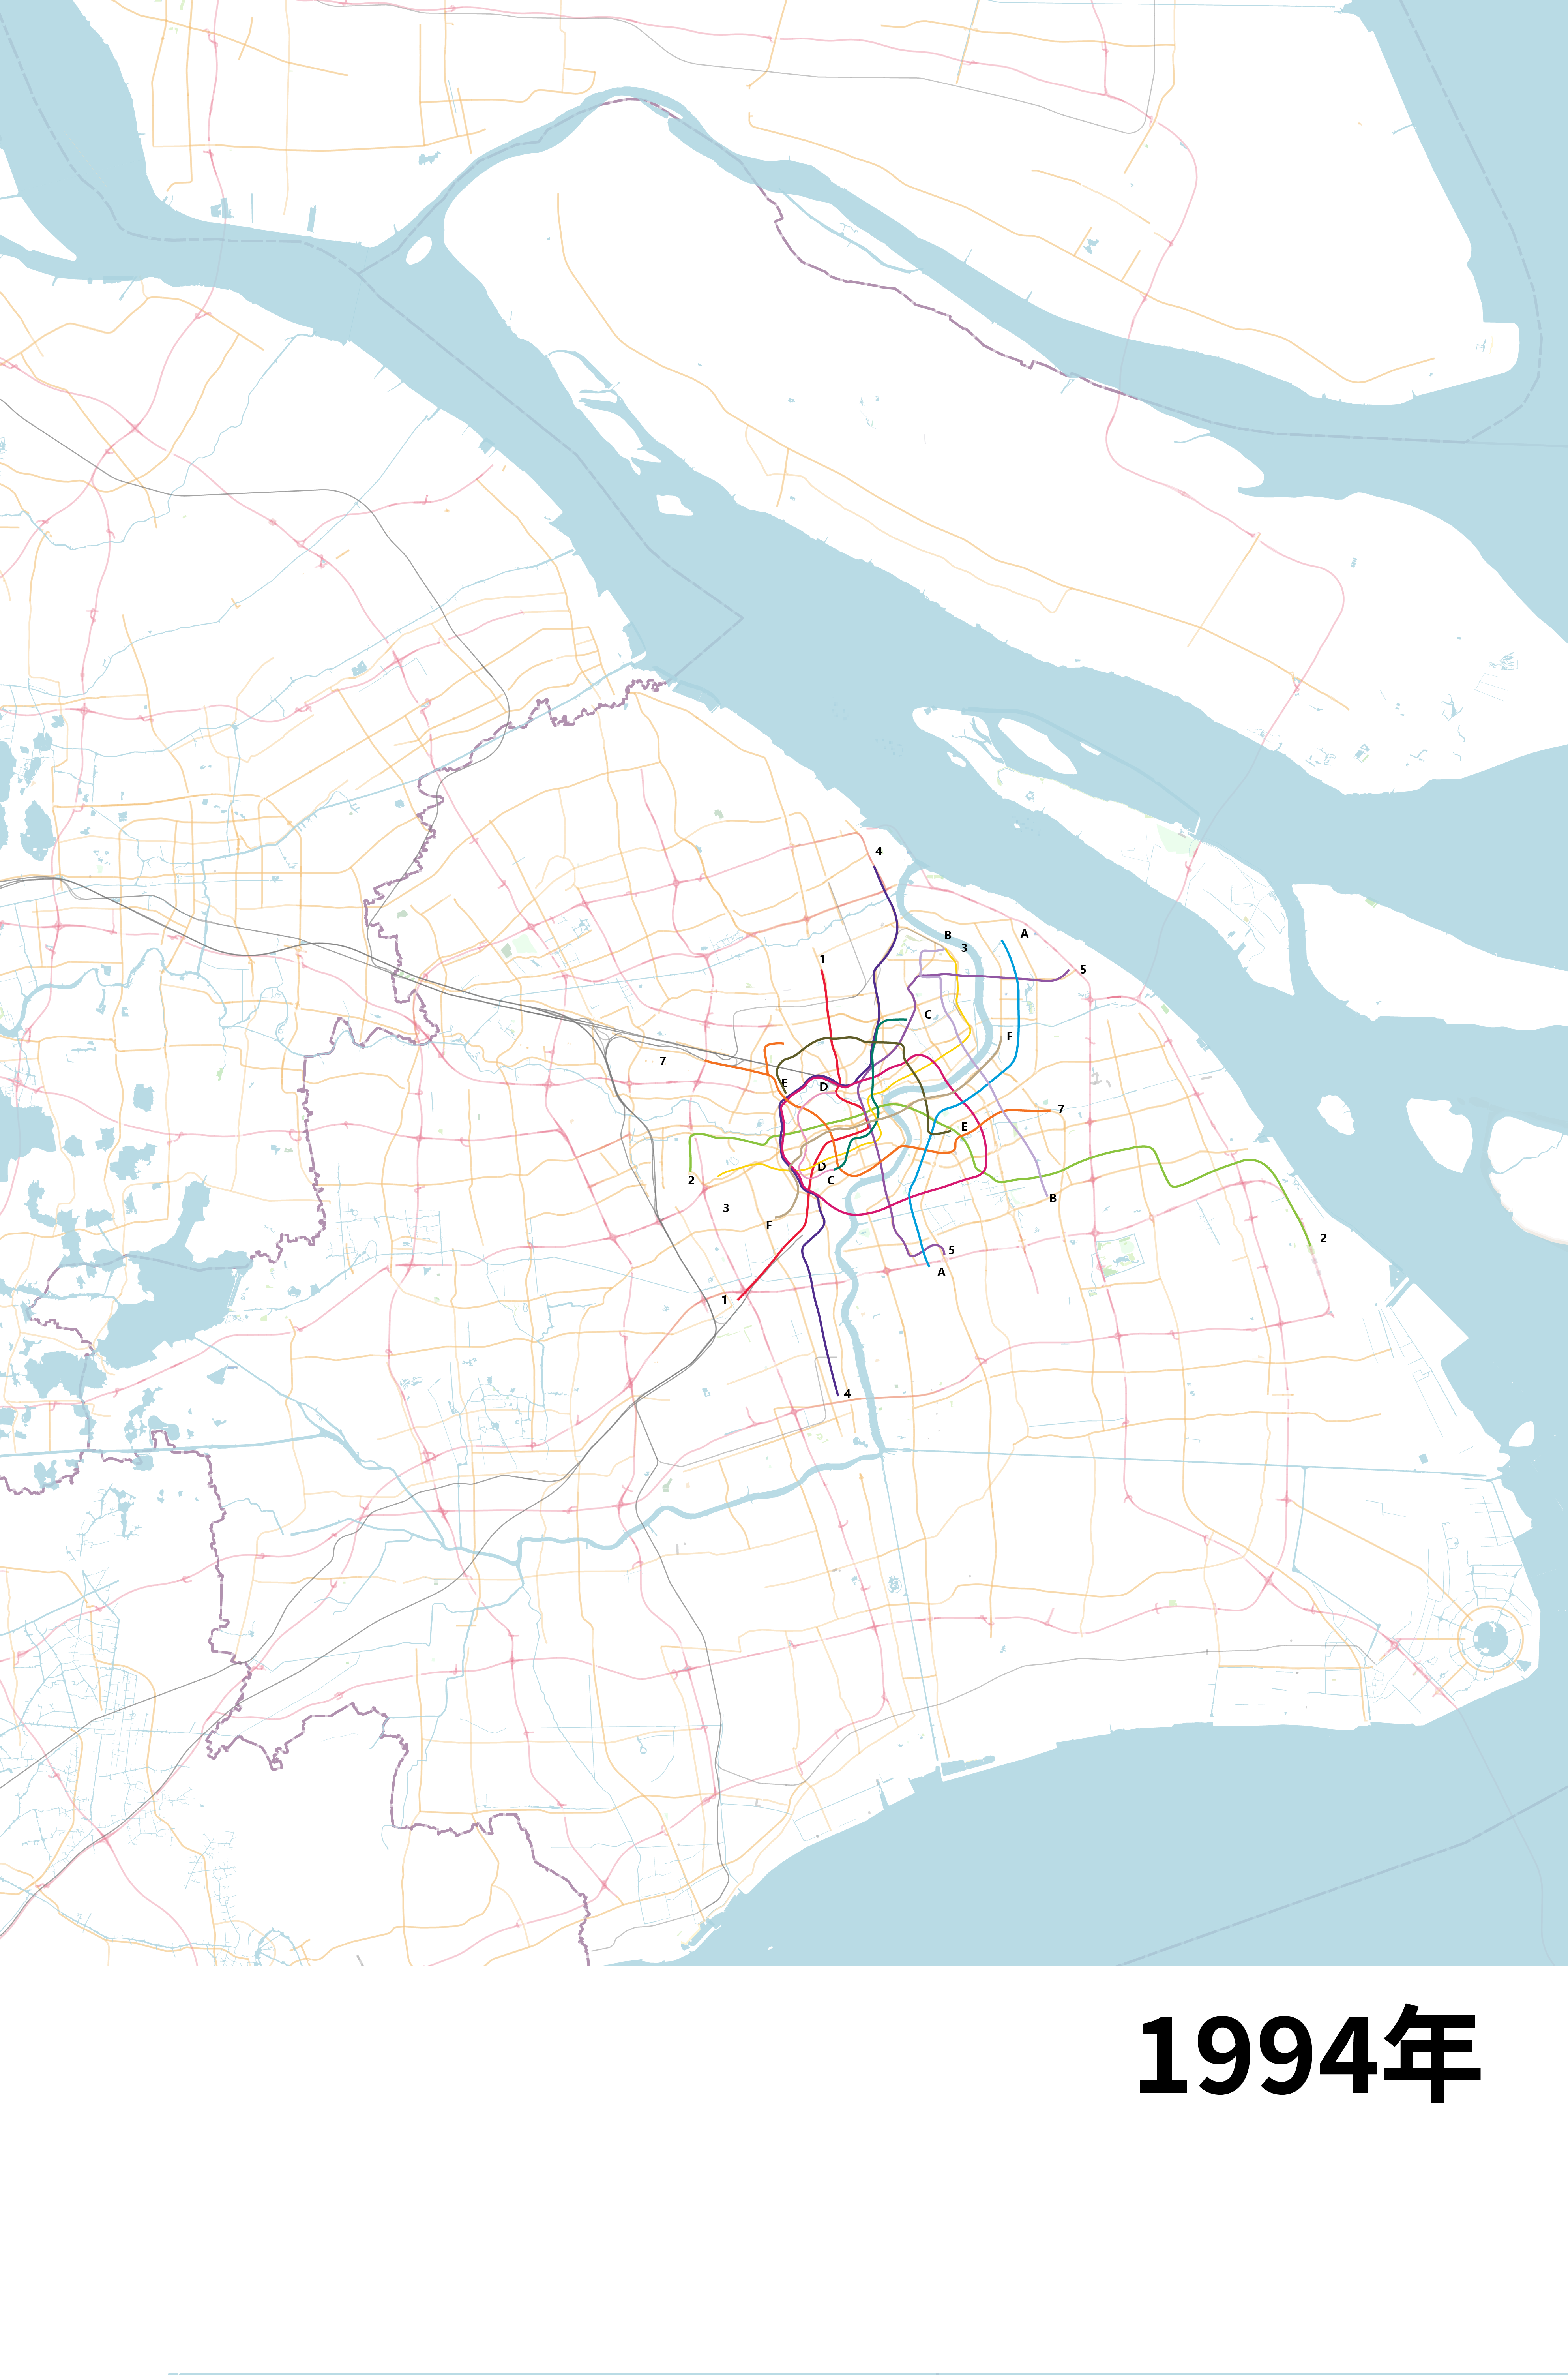 上海城市轨交及市域铁规划变迁图1958199820152021文字描述版